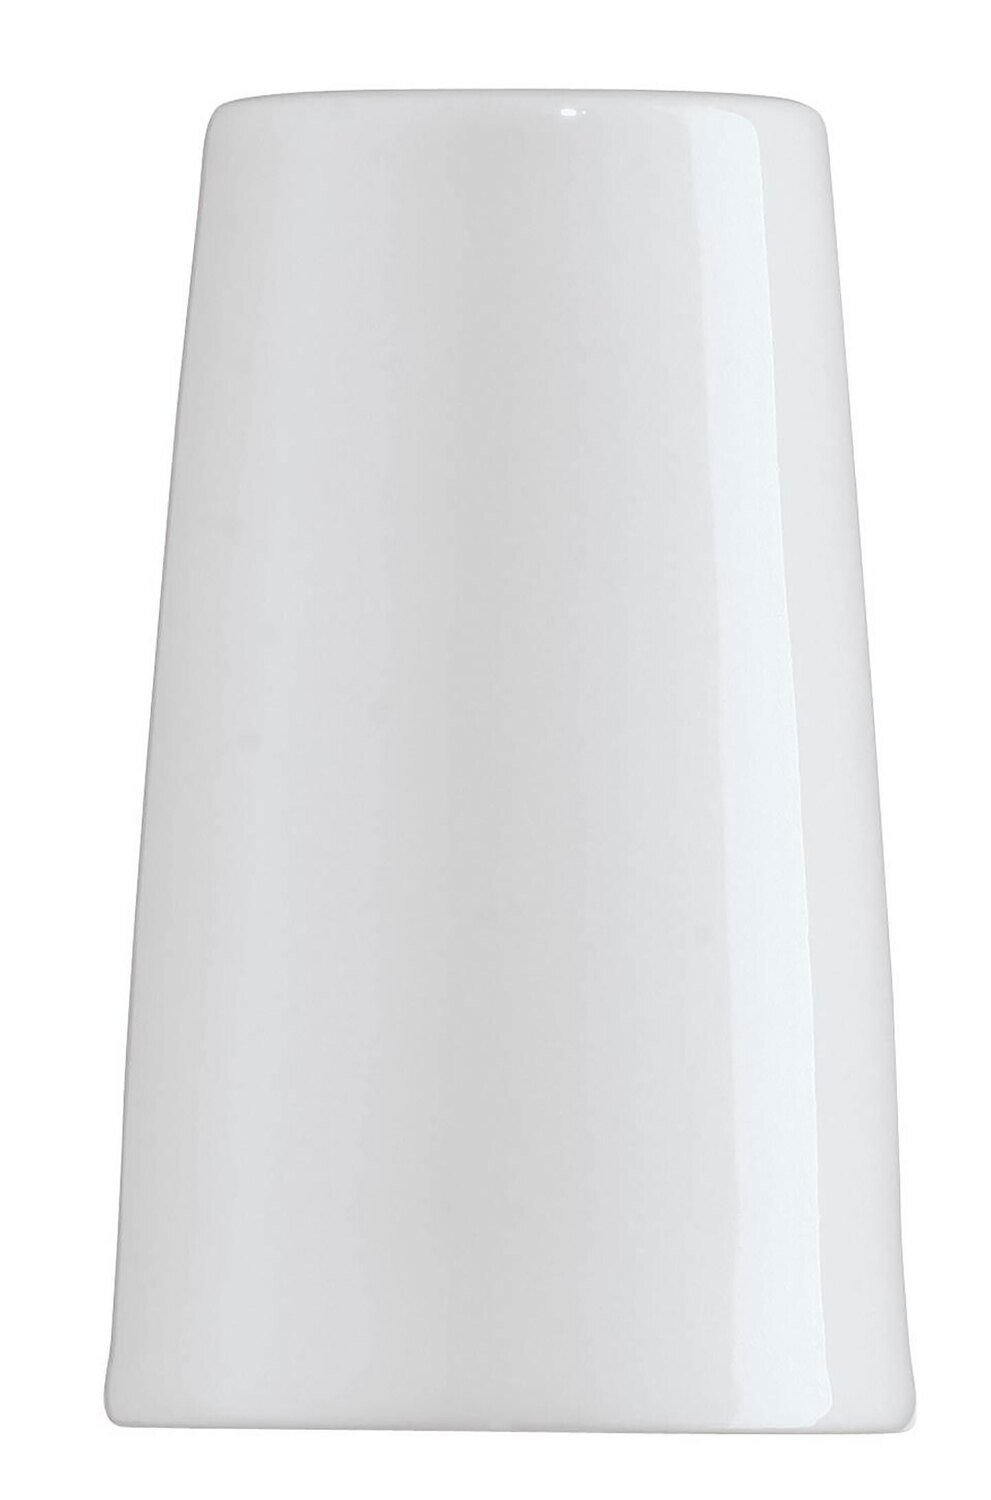 Arzberg Tric White Pepper Shaker